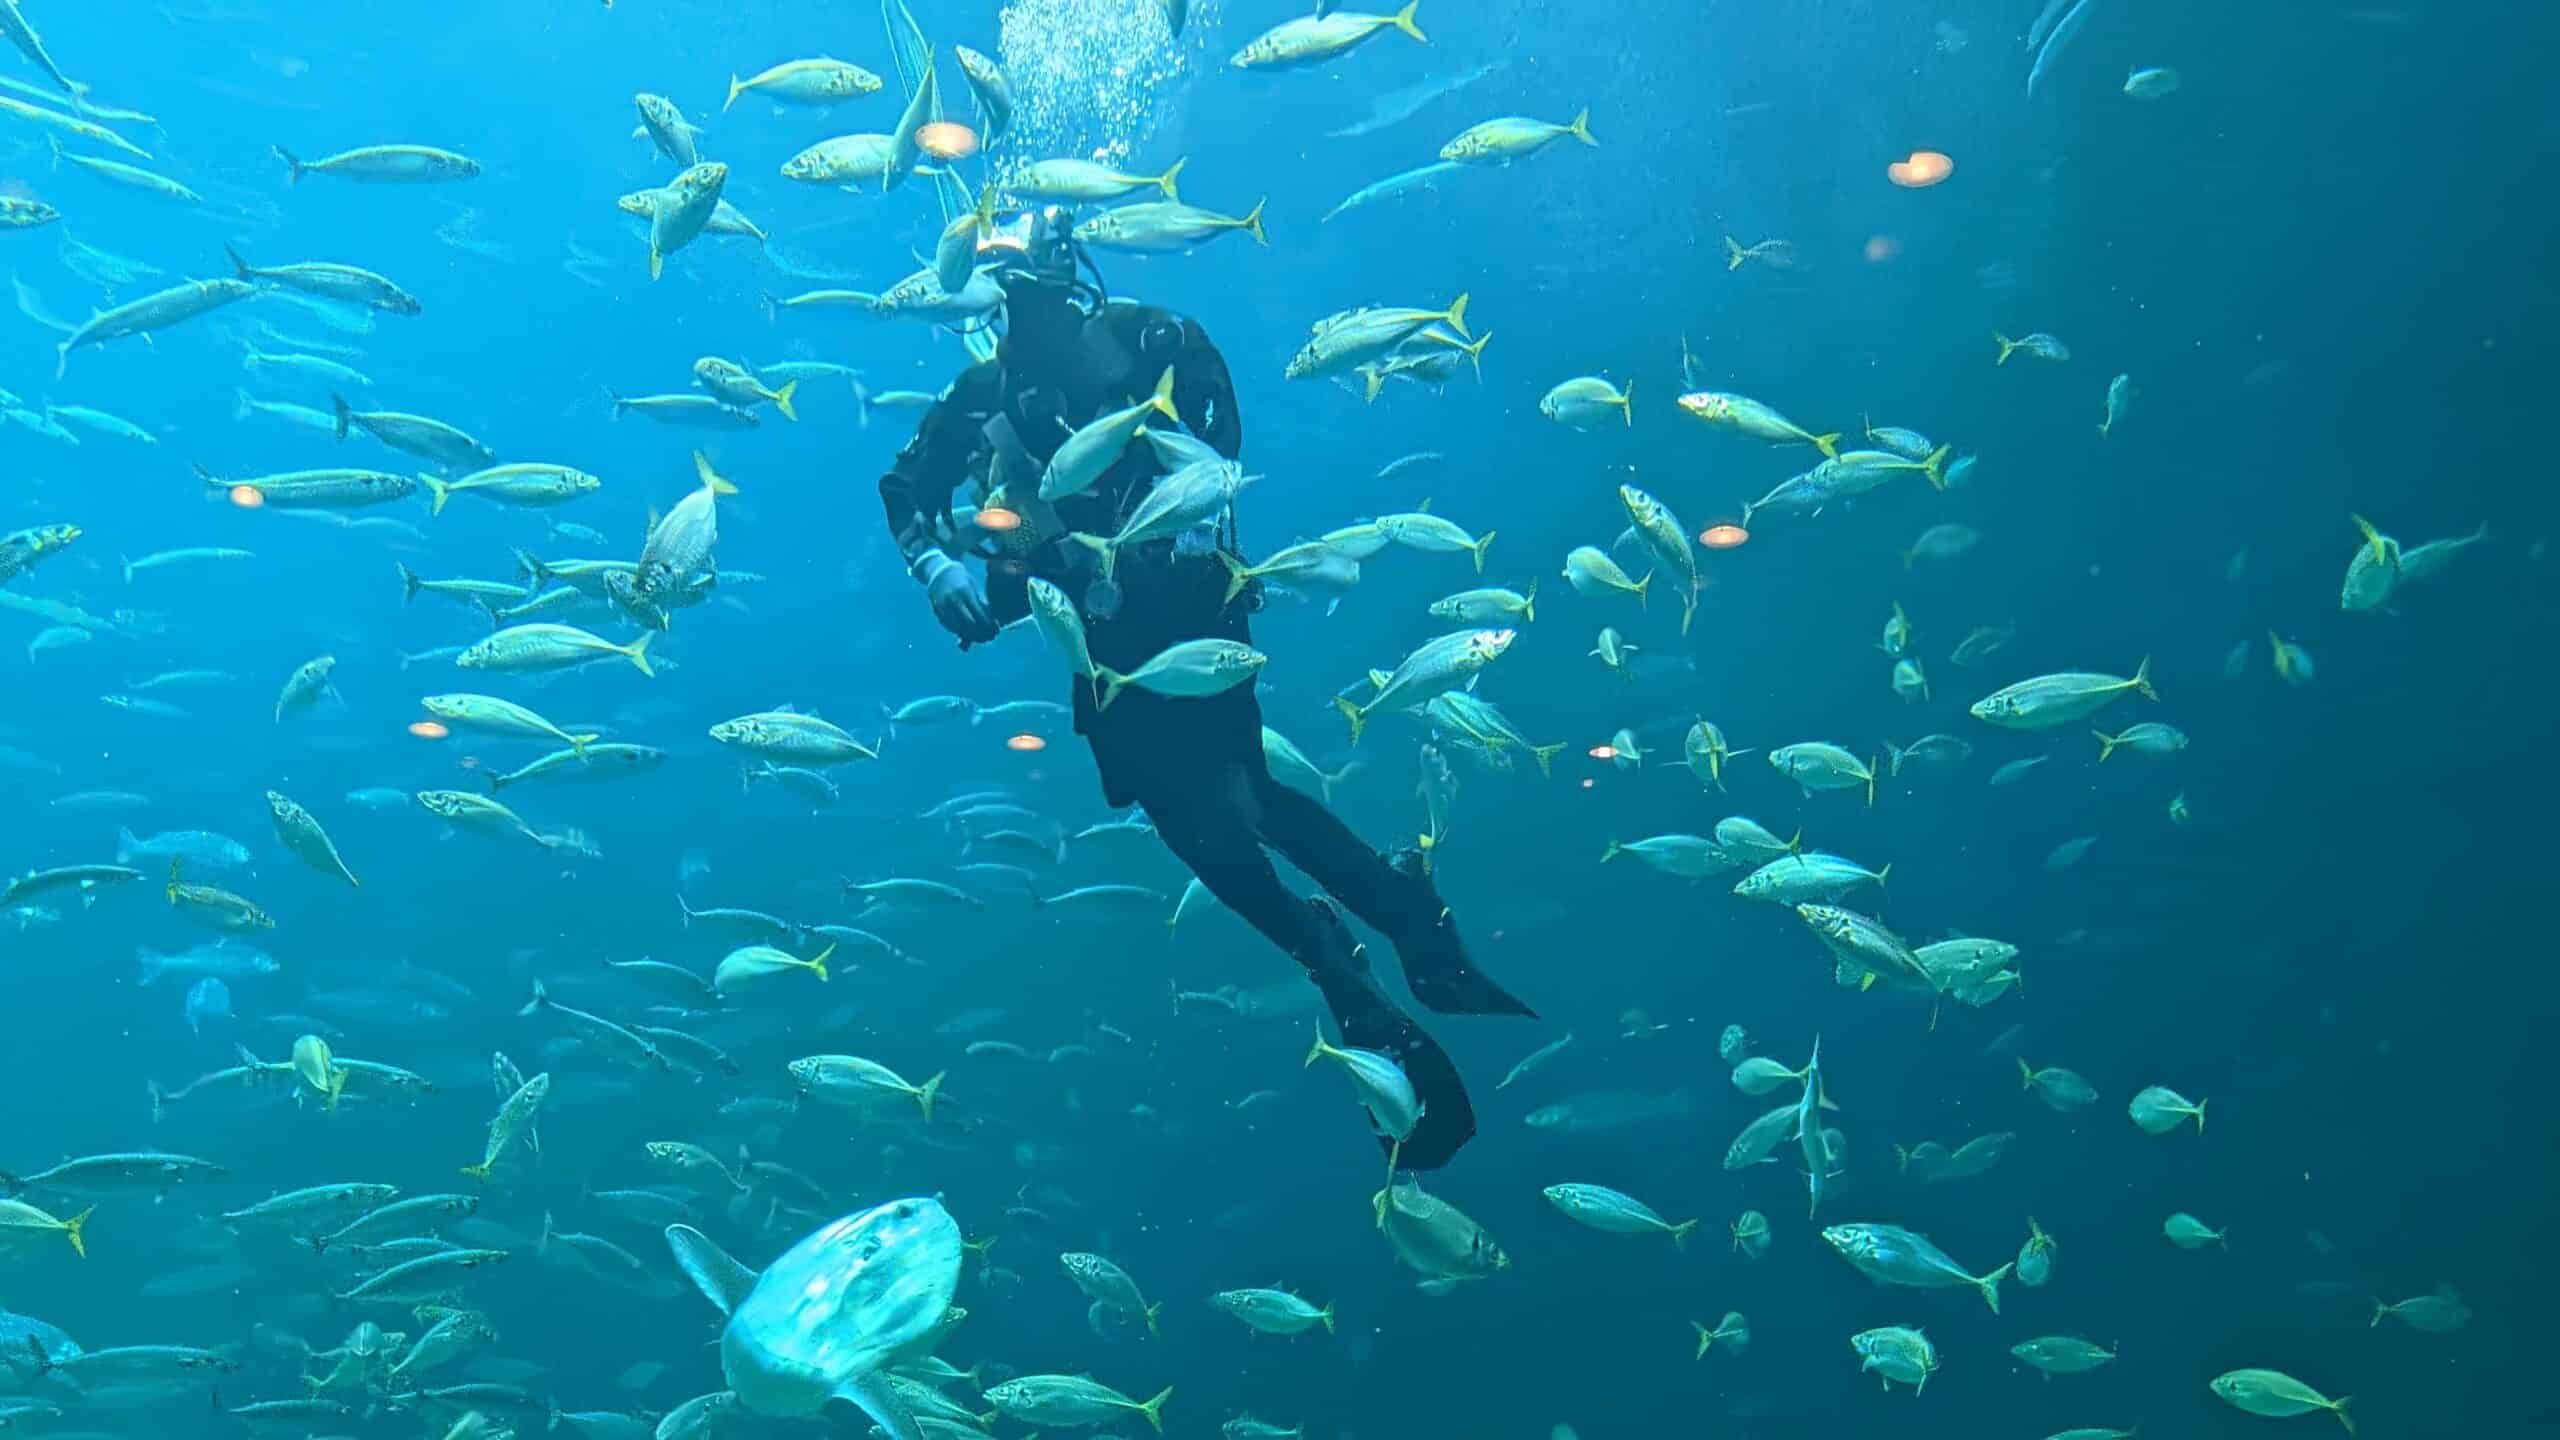 Ein Mann im Neoprenanzug schwimmt in einem großen Becken voller Fische.